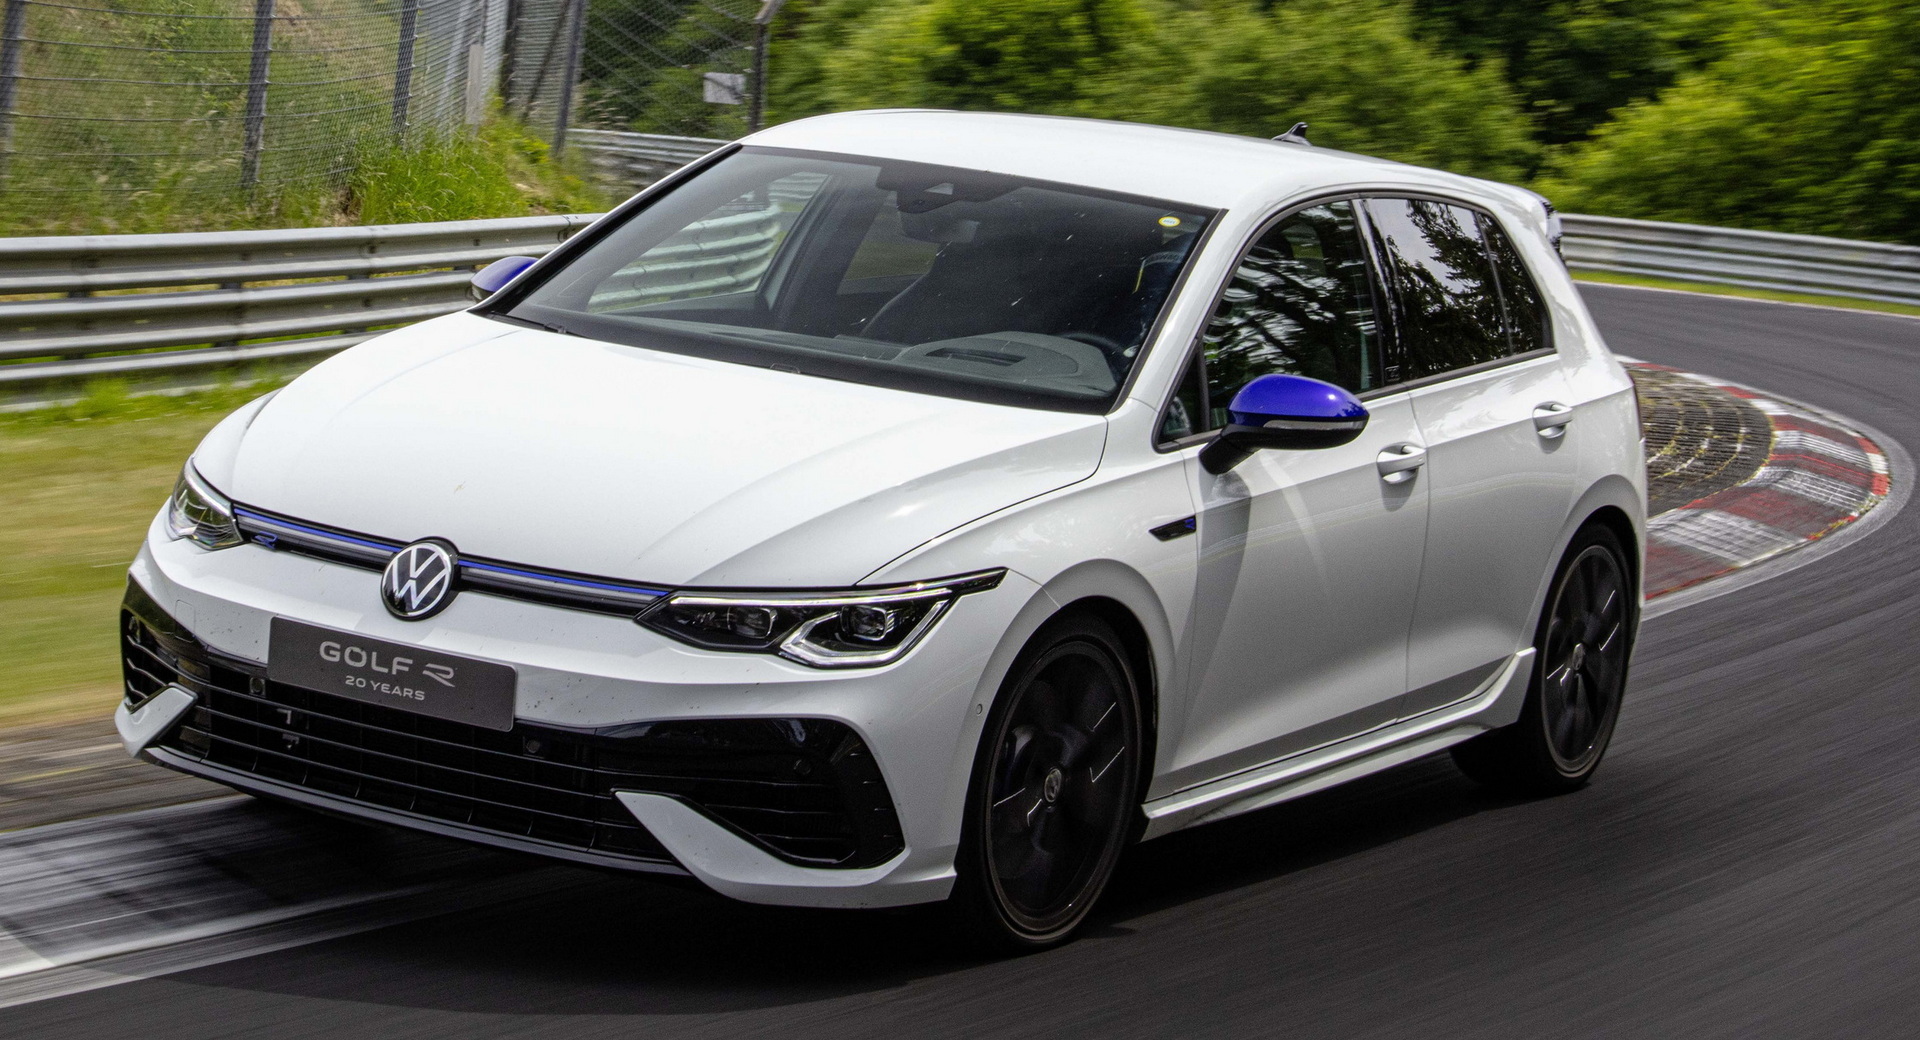 La Golf R ’20 Years’ 2023 devient la VW de marque R la plus rapide à avoir fait le tour du Nurburgring